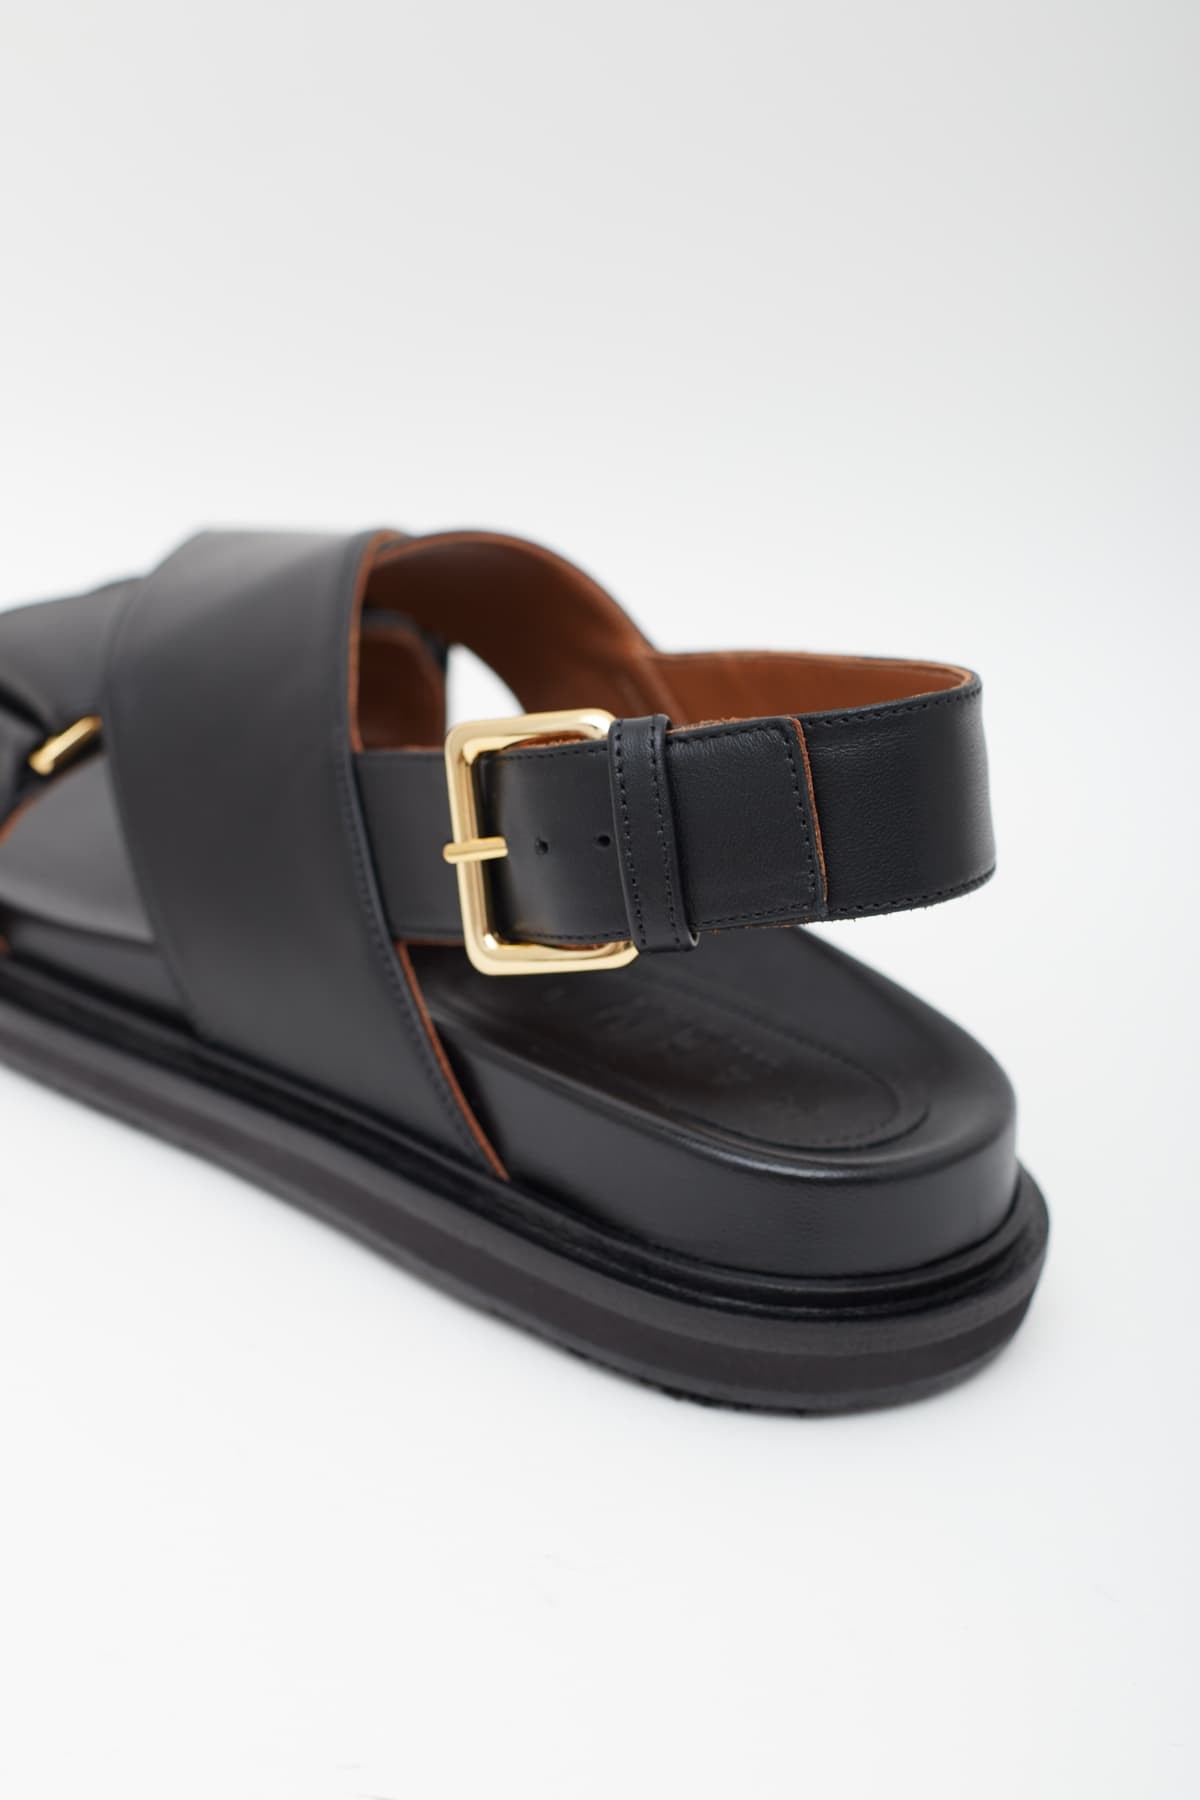 Marni Gold & Black Fussbett Sandals | Lyst Australia